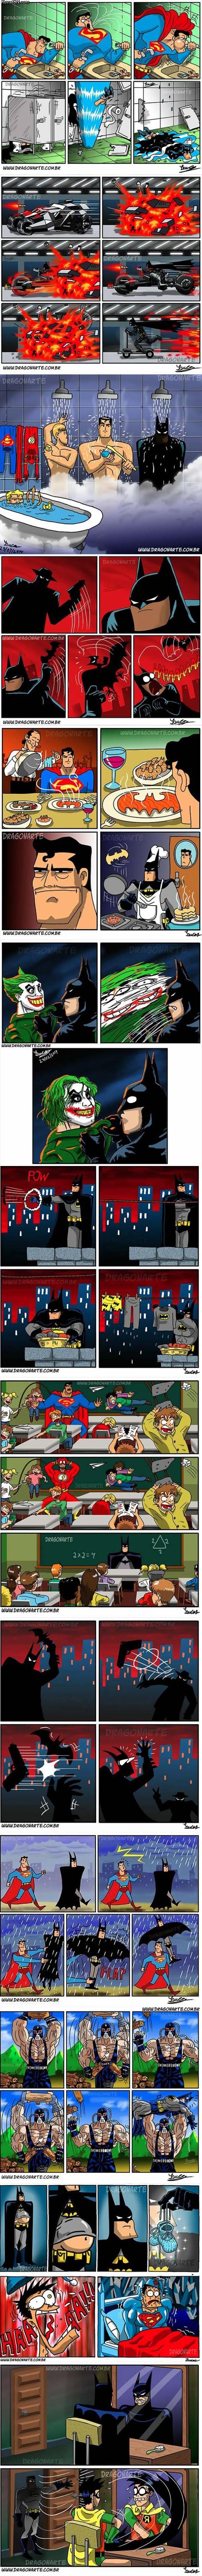 funniest_batman_comics_collection.jpg